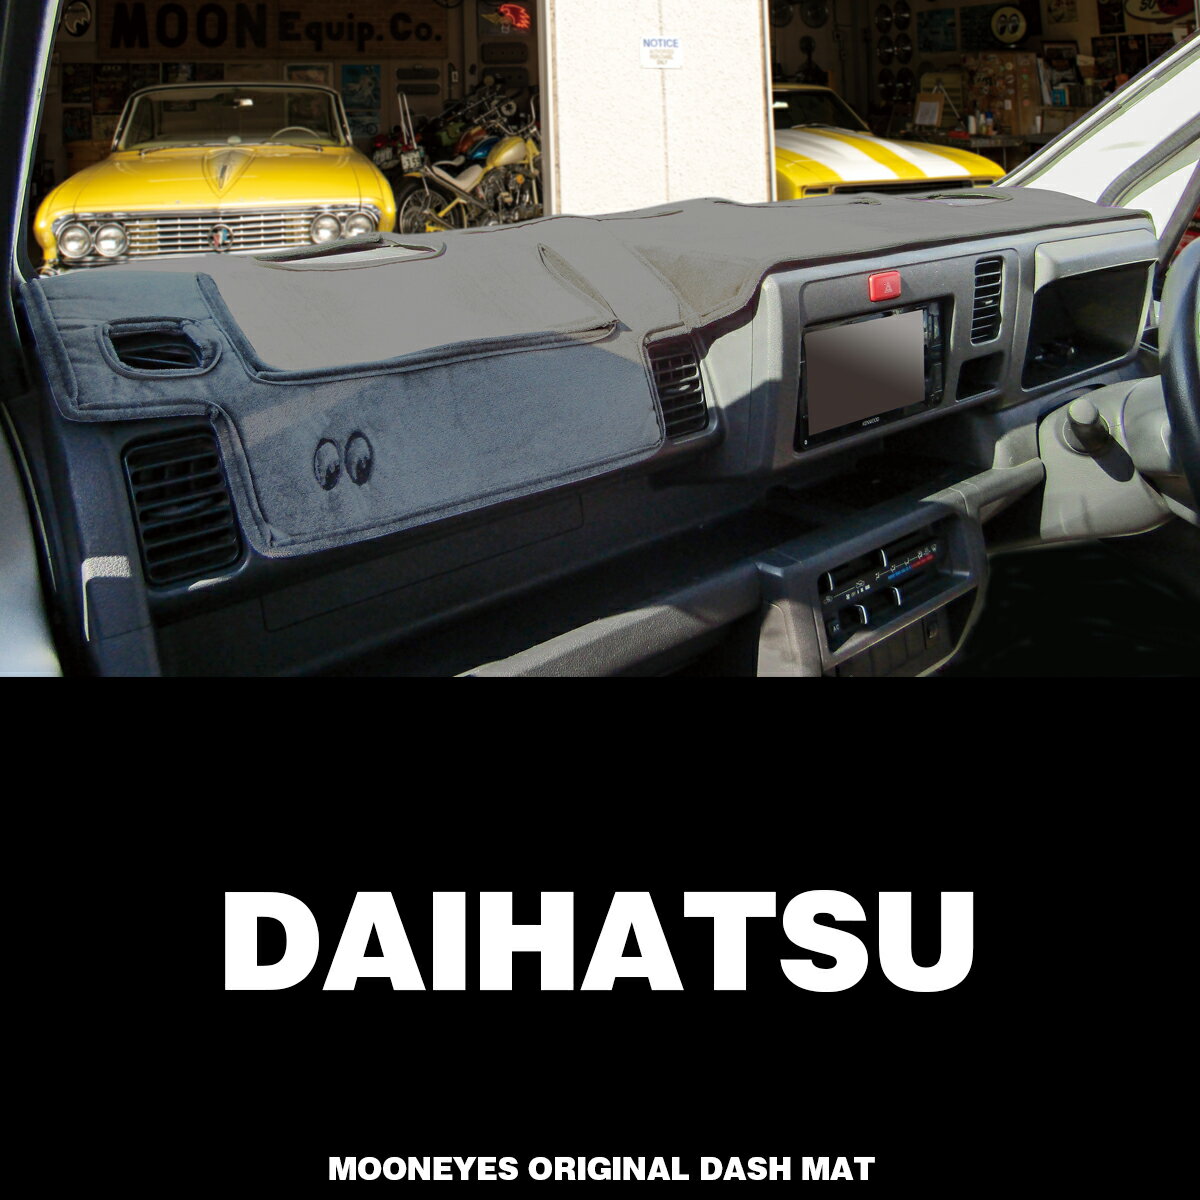 ムーンアイズ (MOONEYES) ダイハツ (DAIHATSU) 用 オリジナル ダッシュマット ダッシュボードマット